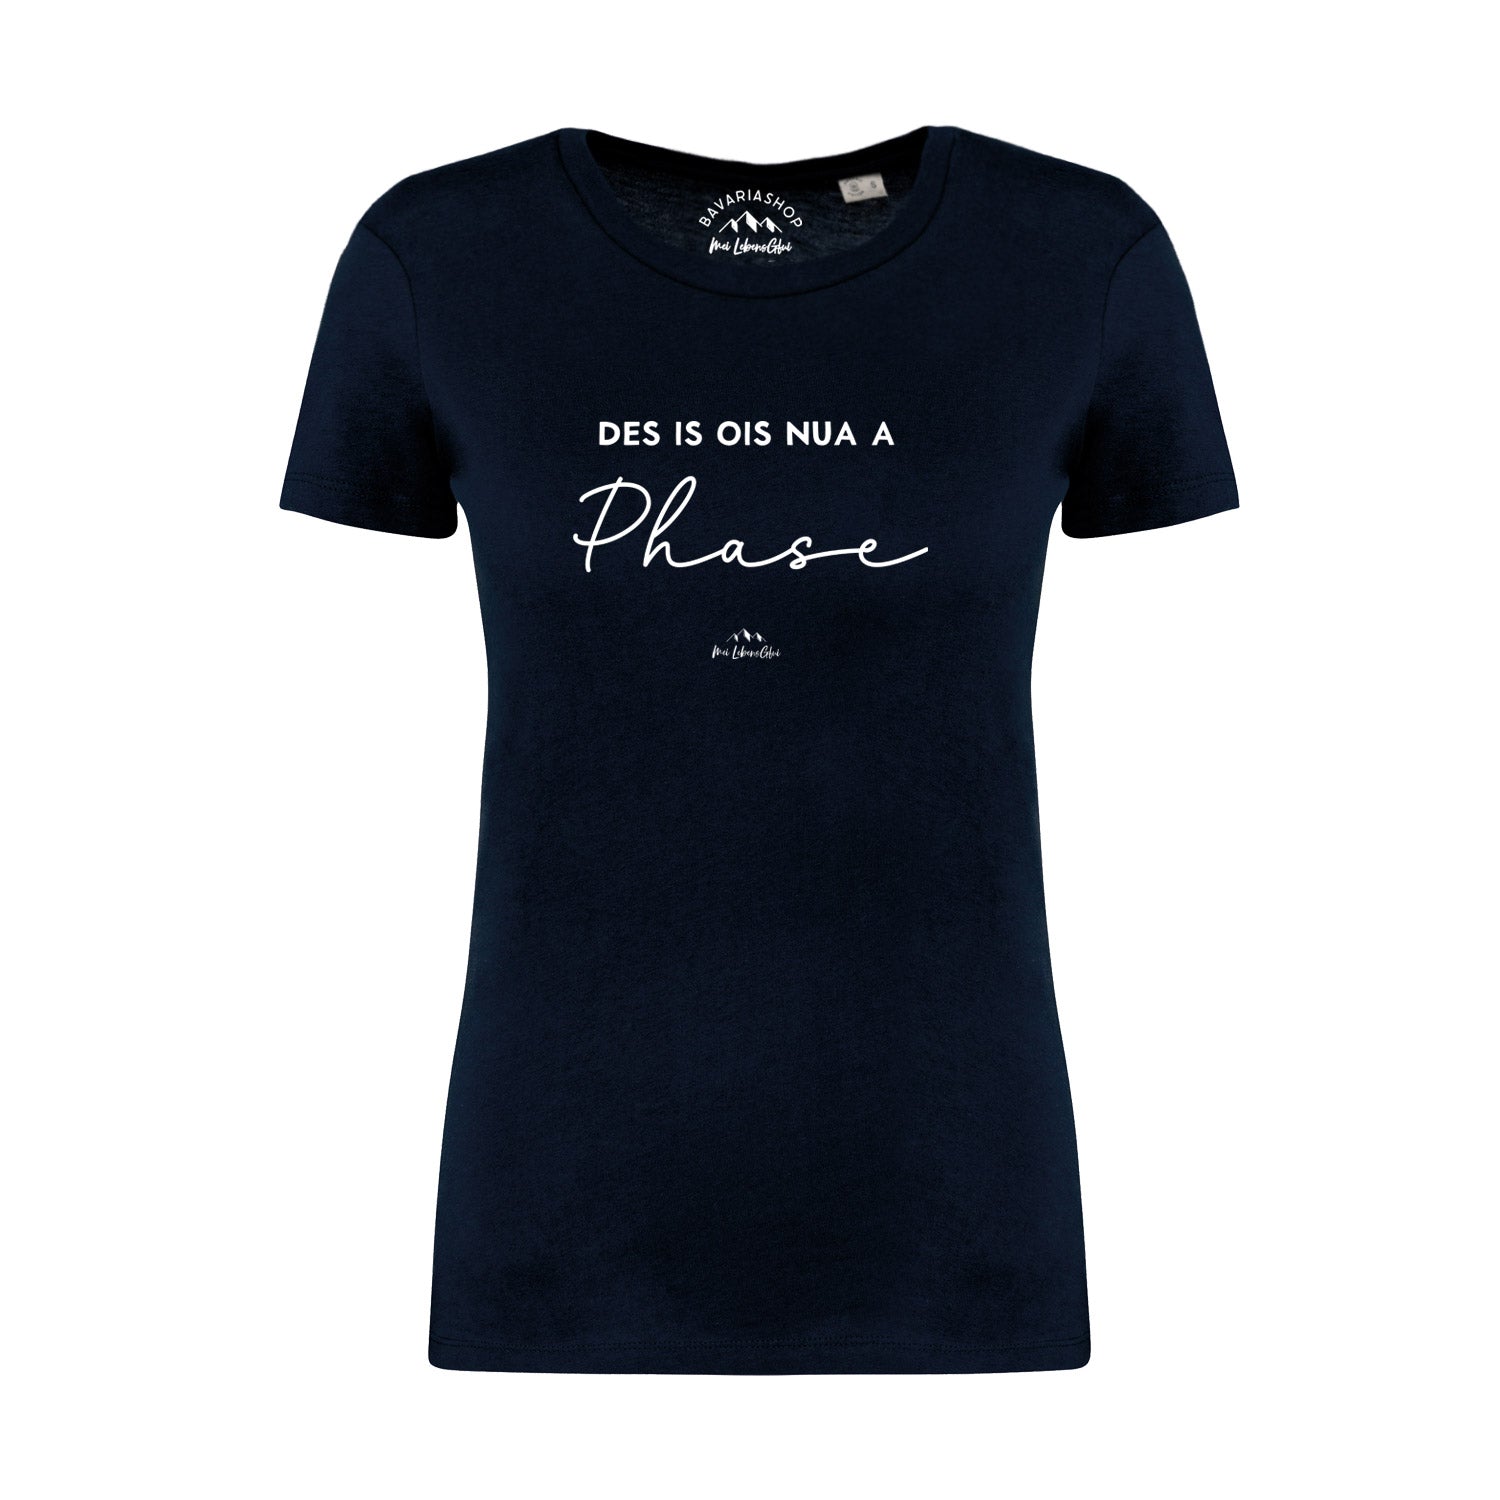 Damen T-Shirt "Des is ois nua a Phase"